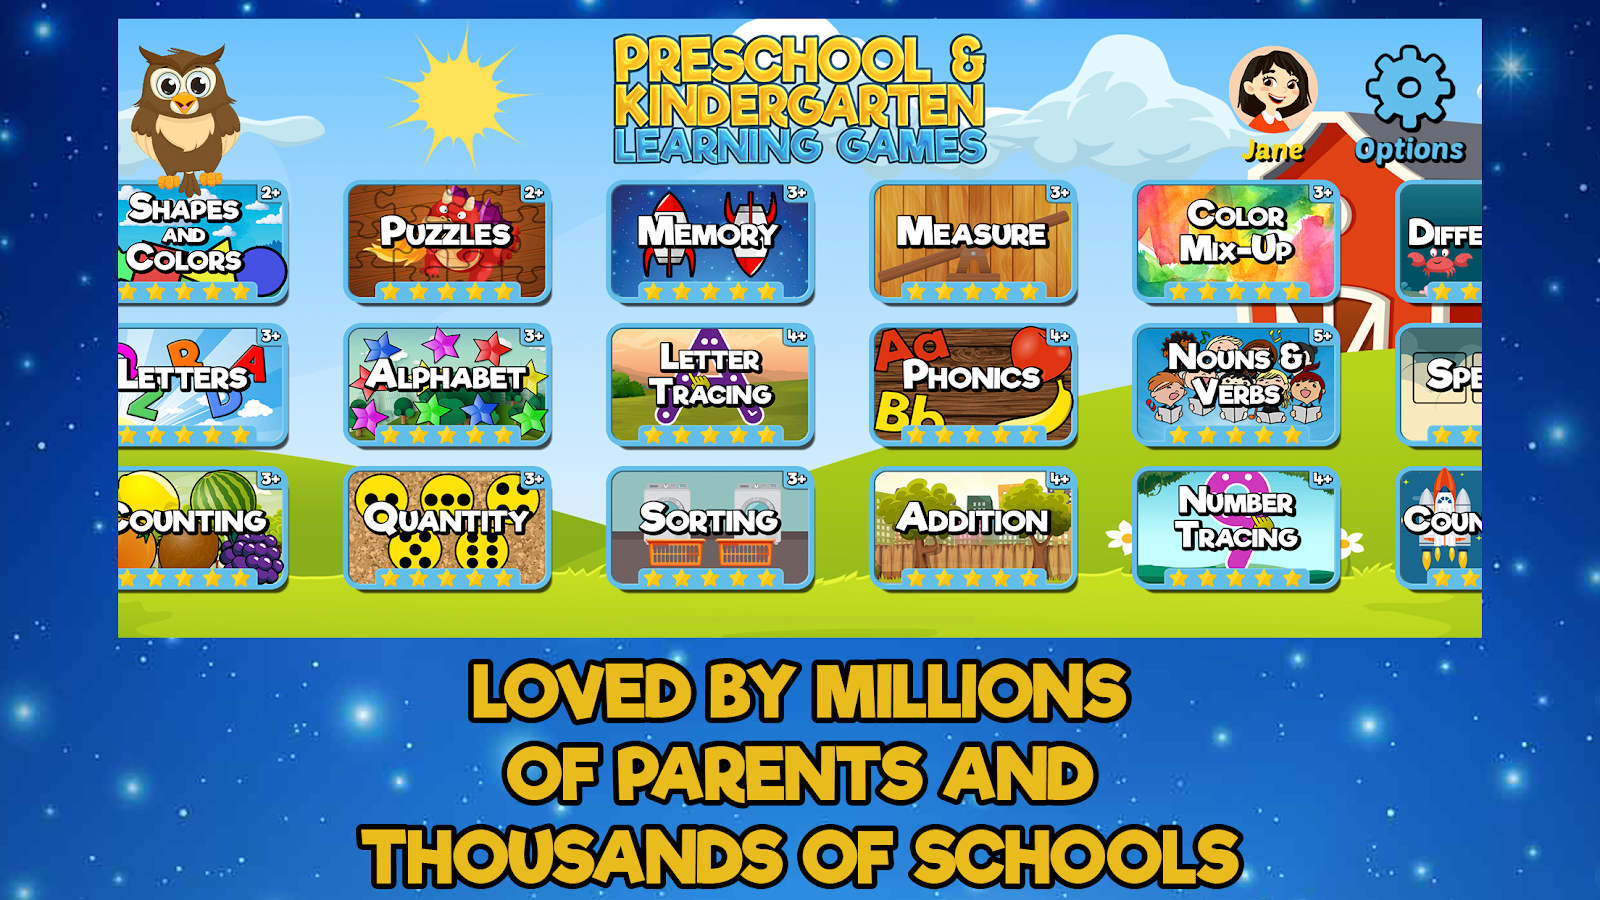 Kids Preschool Learning Games free downloads